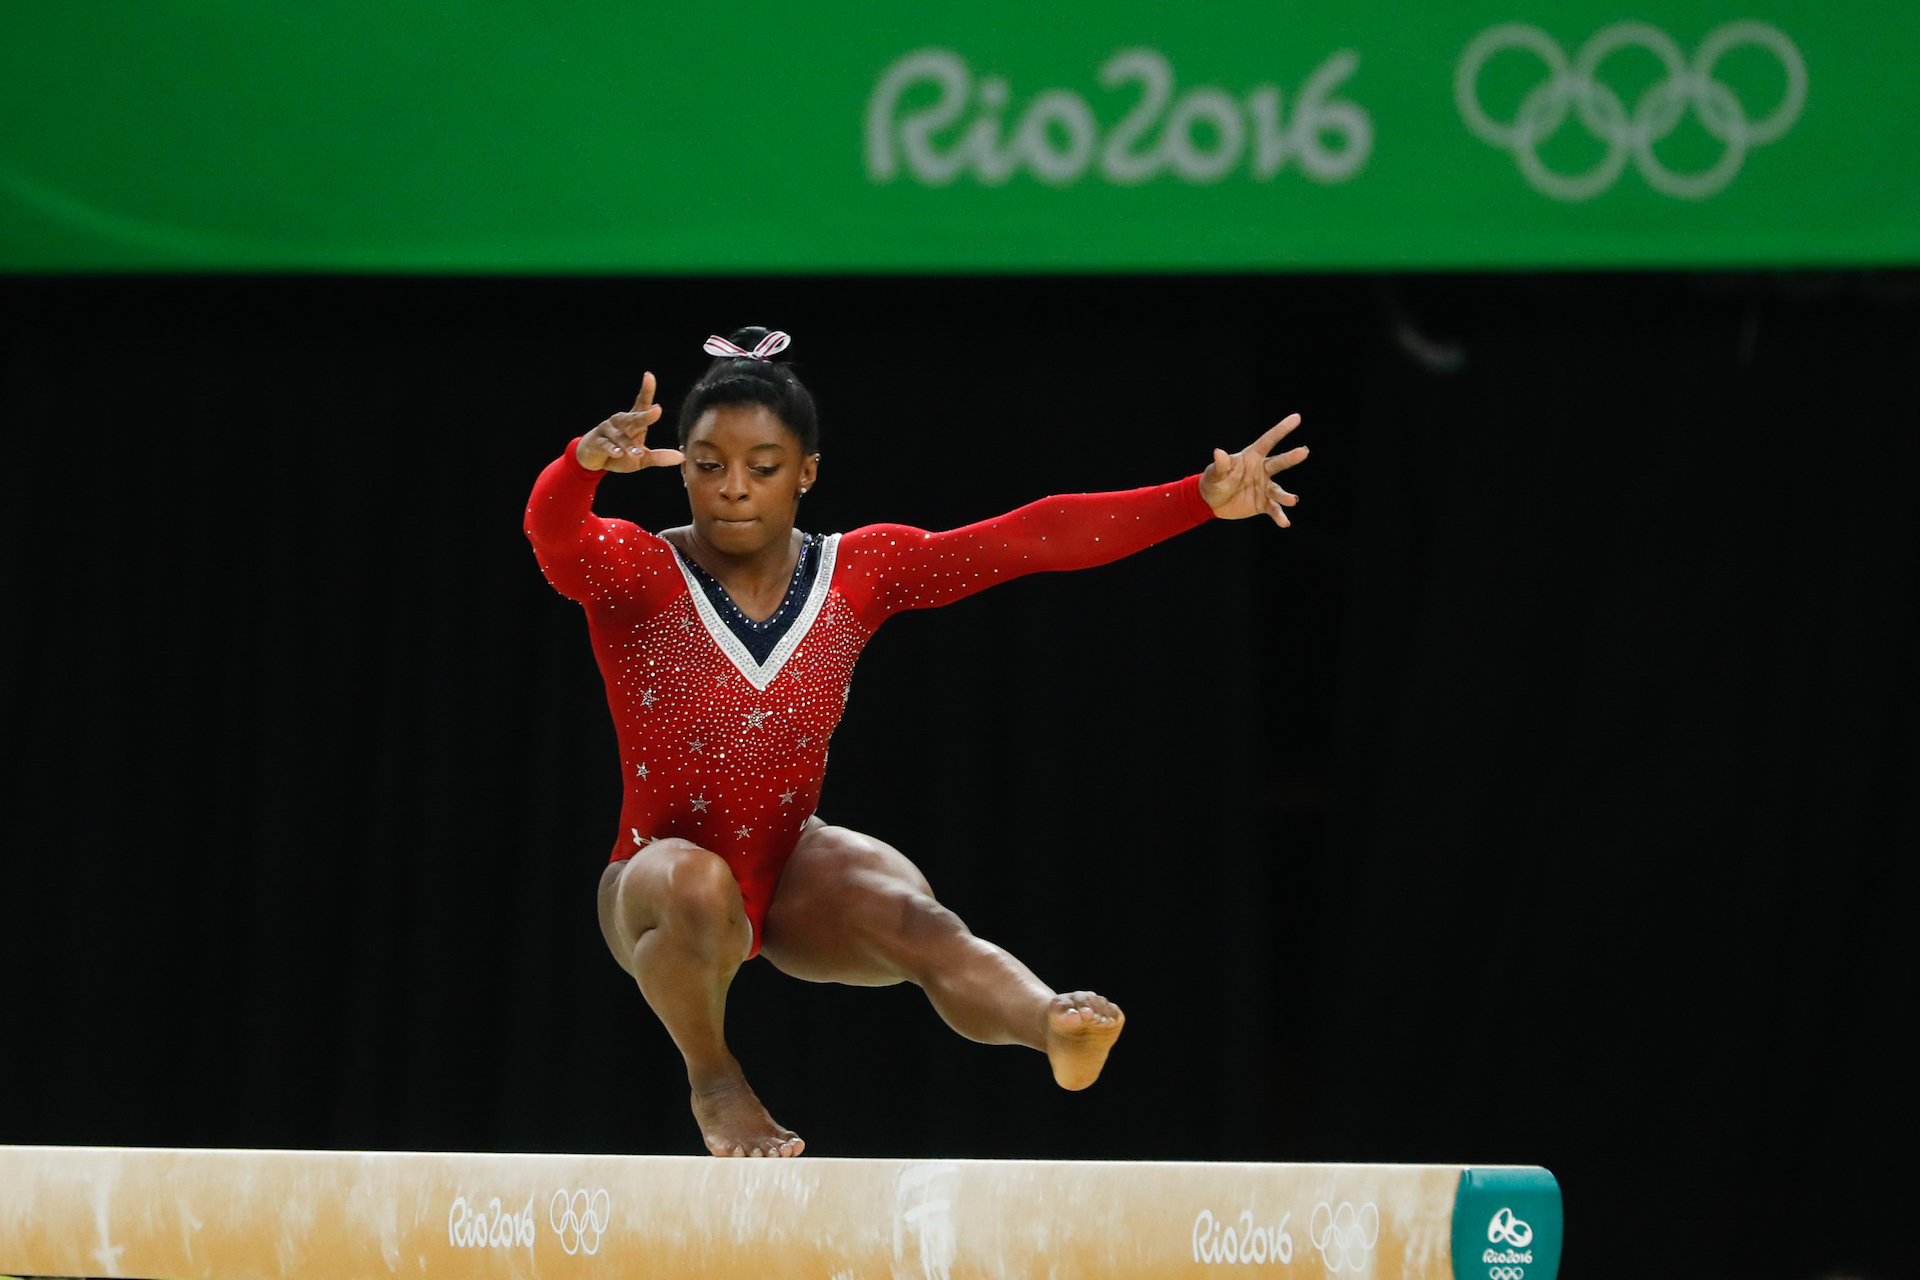 La gymnaste Simone Biles, des États-Unis, termine avec une médaille de bronze dans l'épreuve finale à la poutre, aux Jeux Olympiques de Rio en 2016. © Fernando Frazão/Agência Brasil/ Creative Commons.